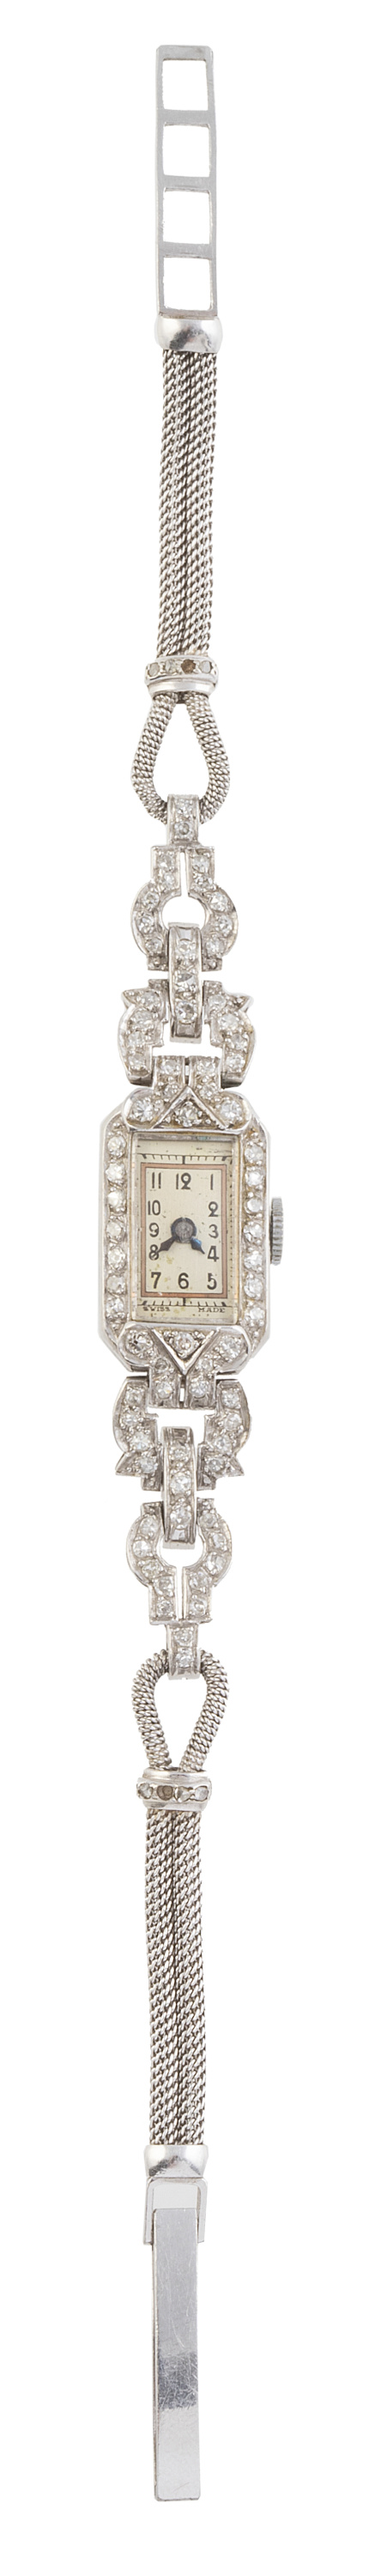 Reloj de pulsera para señora Art-Decó de platino y  brillan